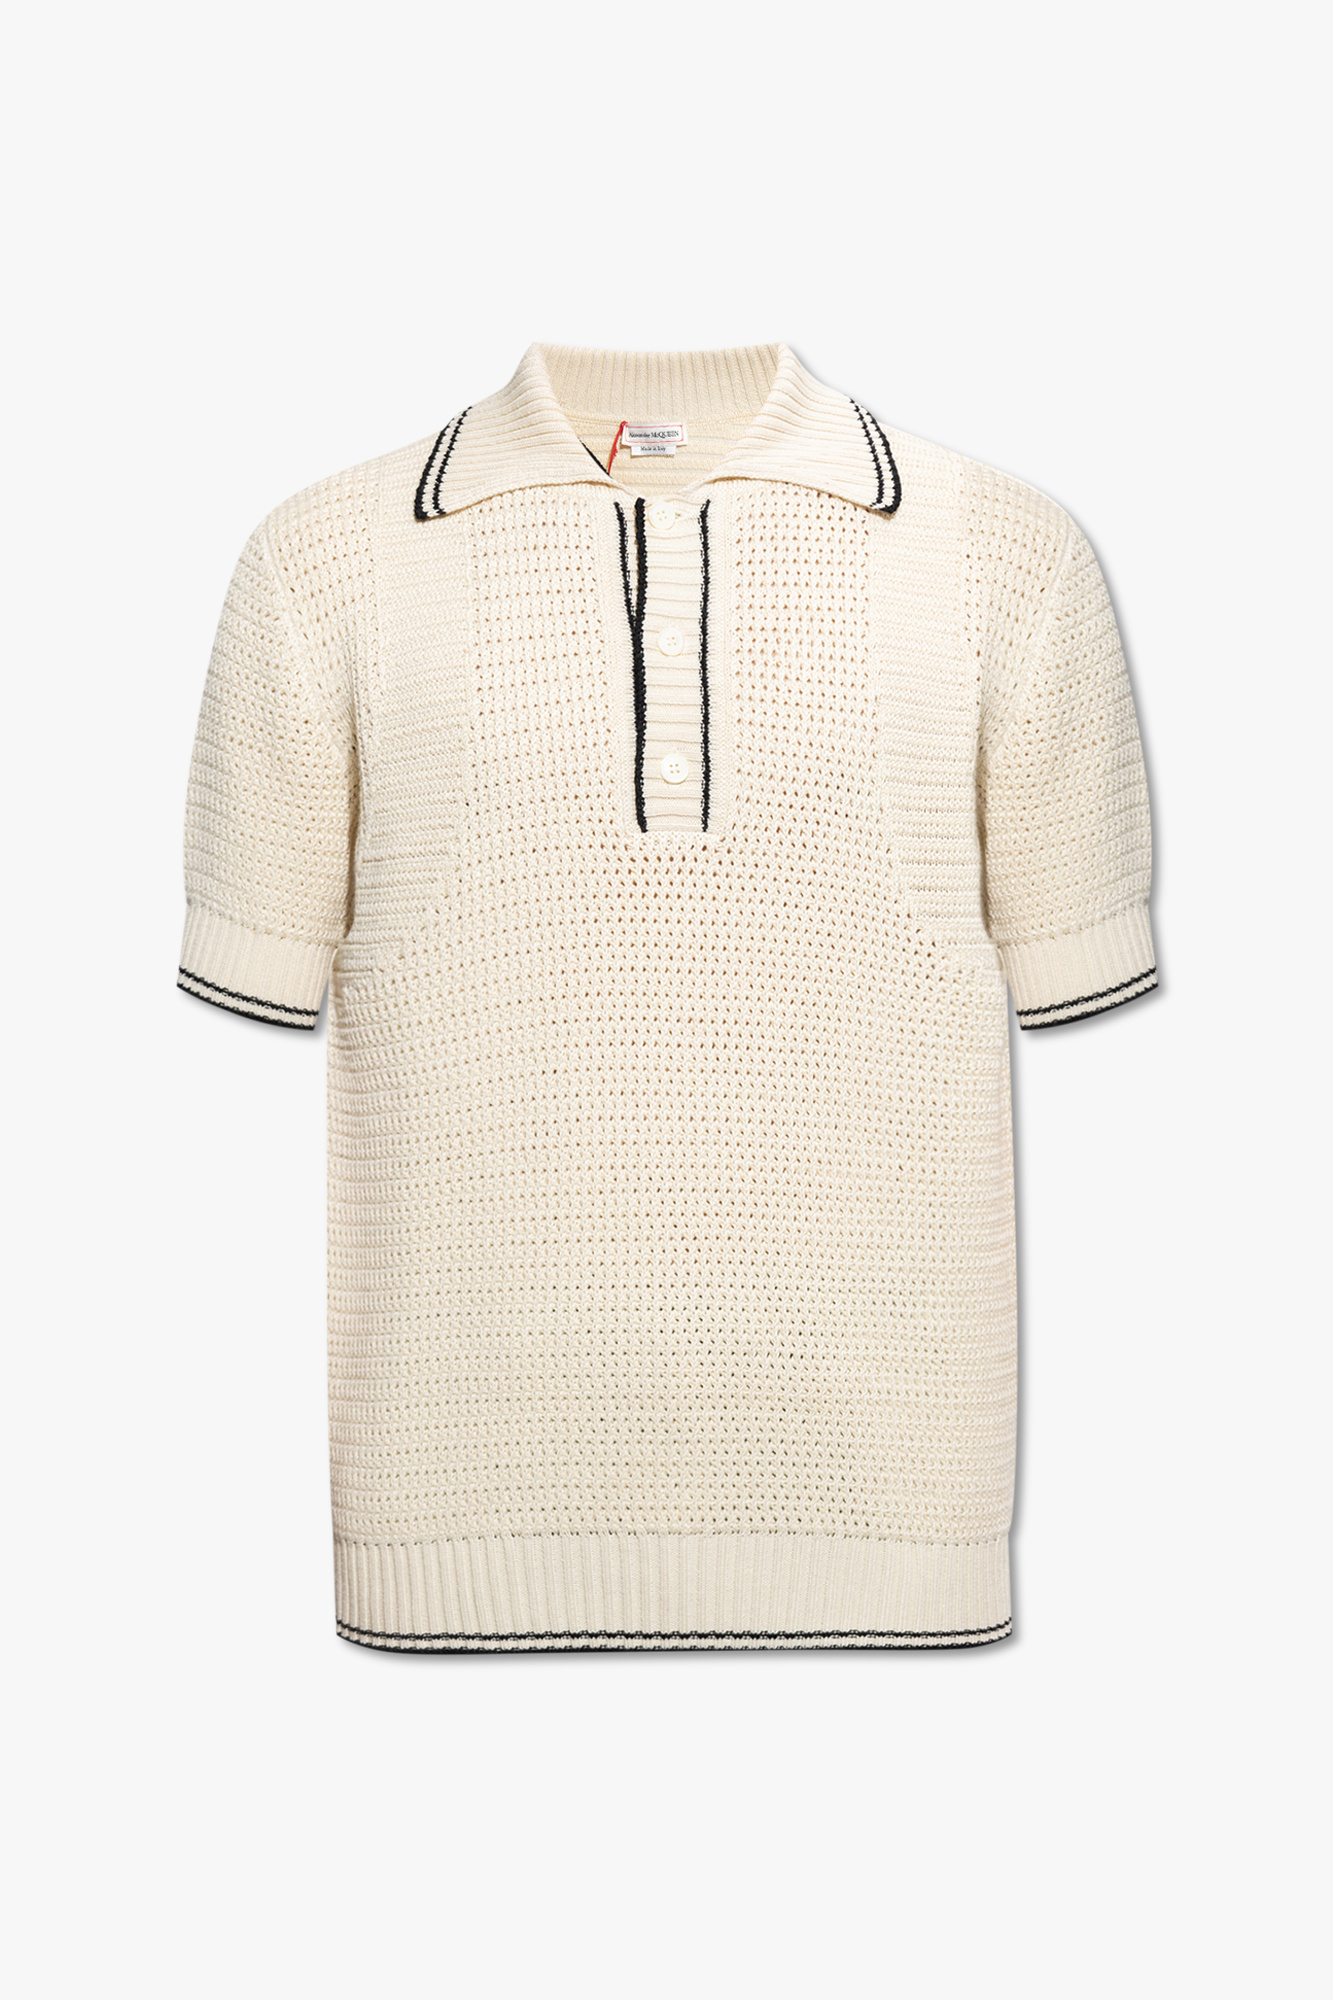 Cream Cotton polo shirt Alexander McQueen - Vitkac GB